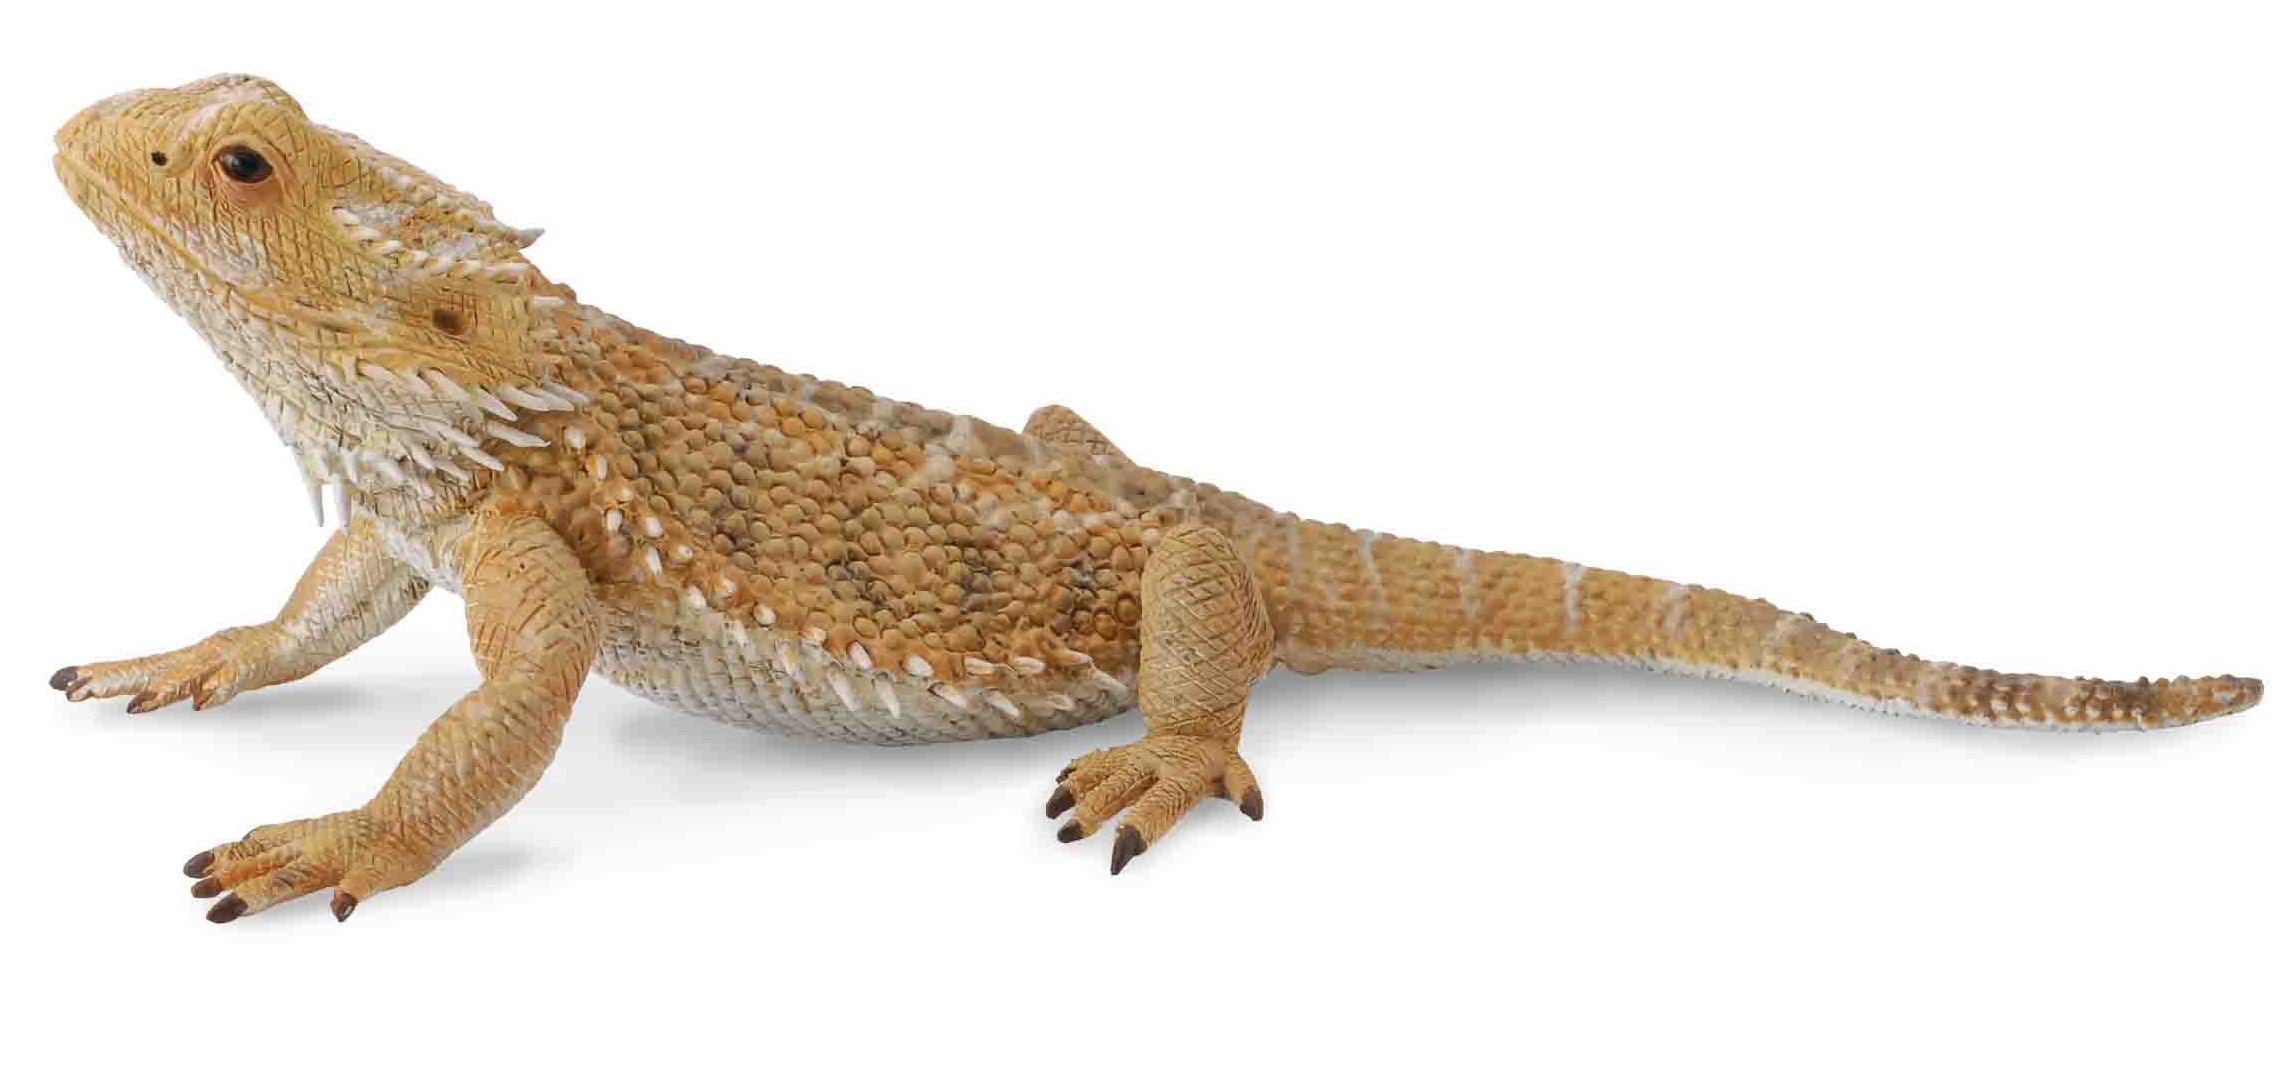 Beardead Dragon Lizard 88567b - Чебоксары 